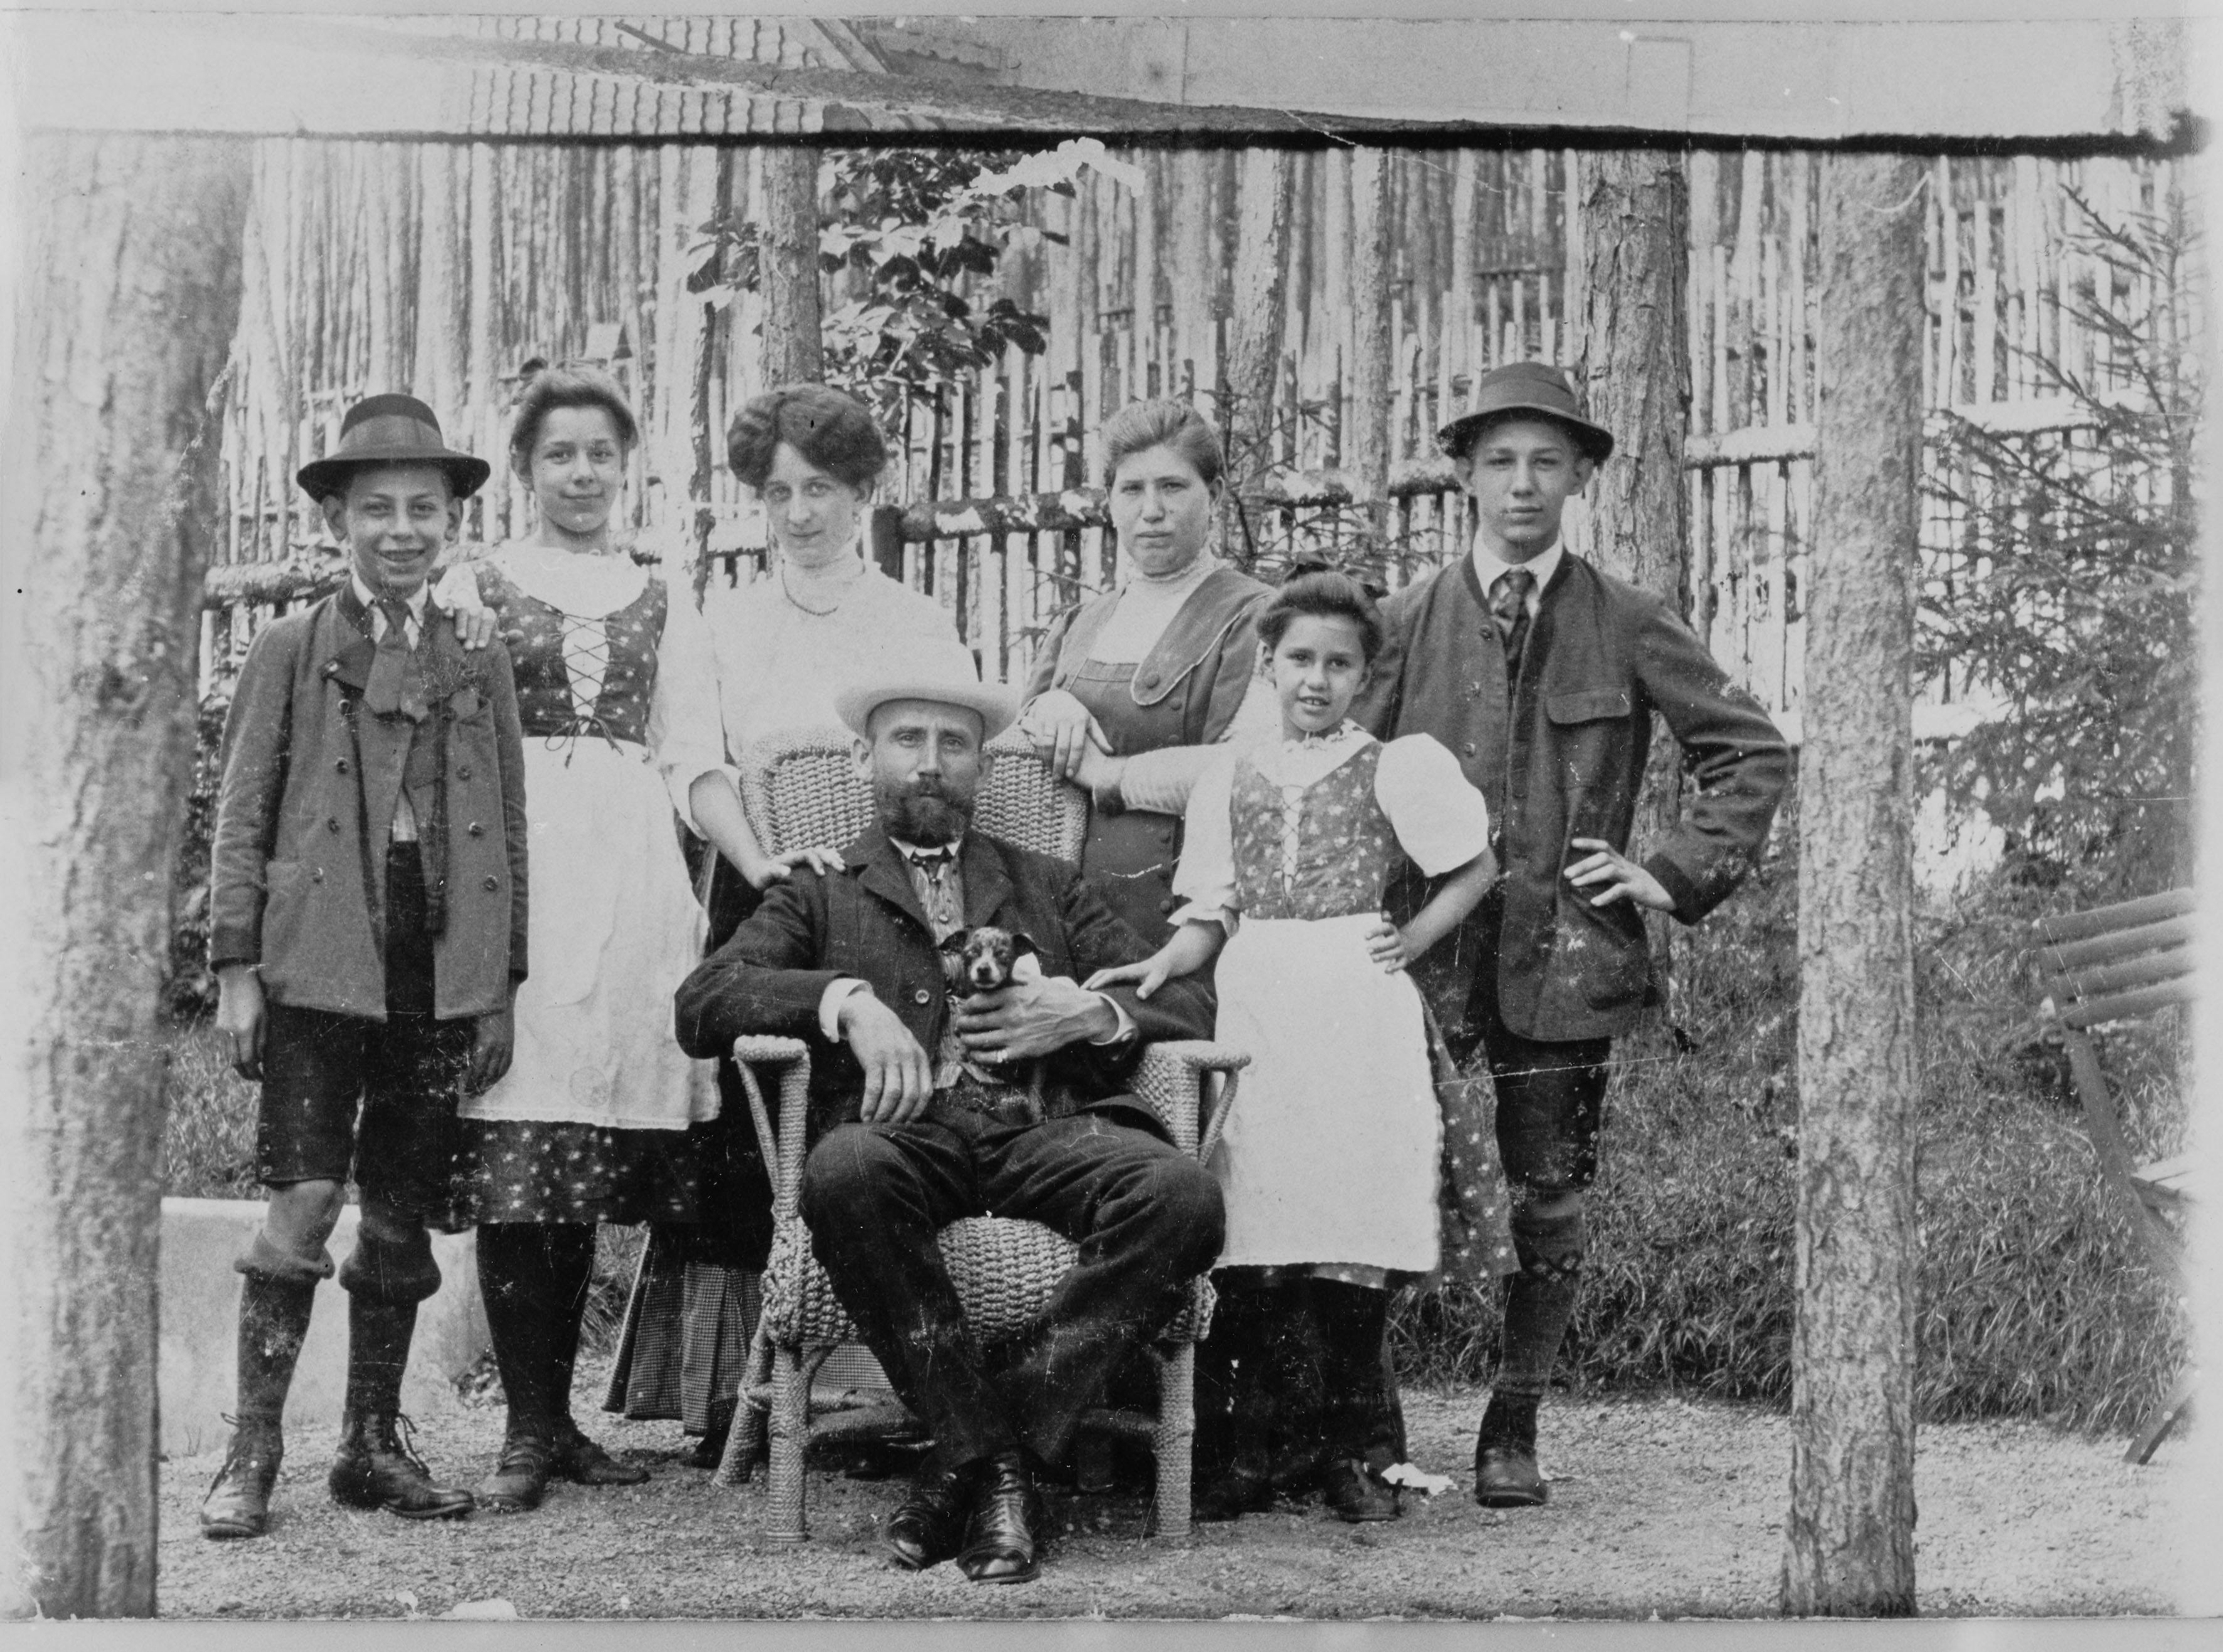 Familie Hauer, ca. 1910. Ganz links: Leopold Hauer; sitzend in der Mitte: Franz Hauer